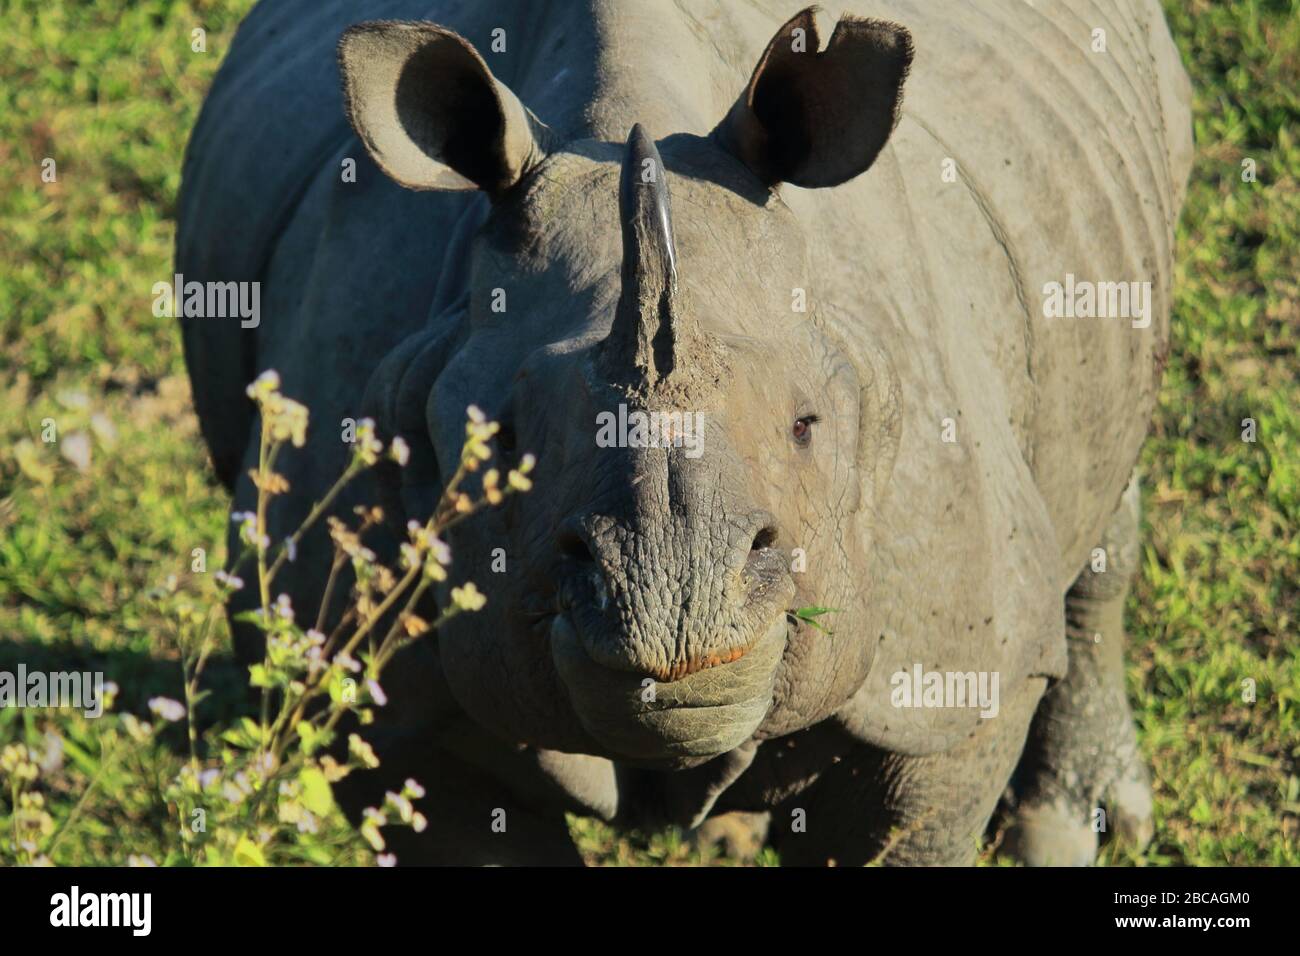 un rhinocéros indien mâle à une horne ou plus un rhinocéros corné dans le parc national de kaziranga. cet animal en voie de disparition trouvé dans la prairie du terai Banque D'Images